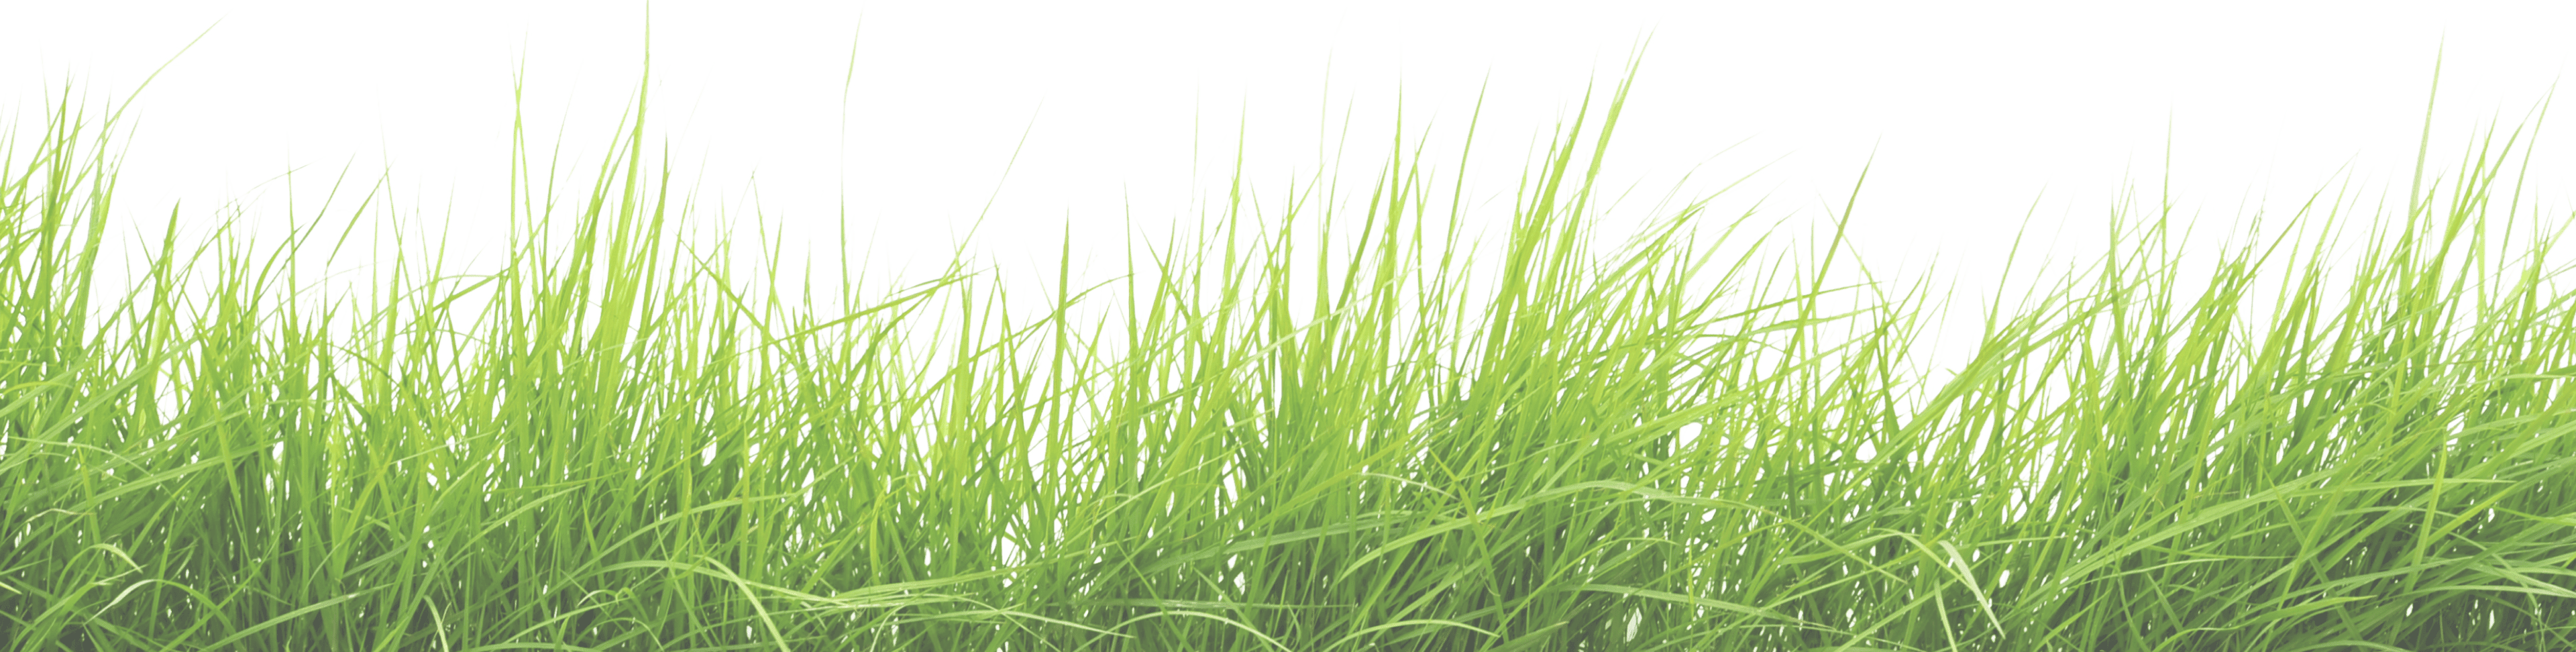 green-mask-grass